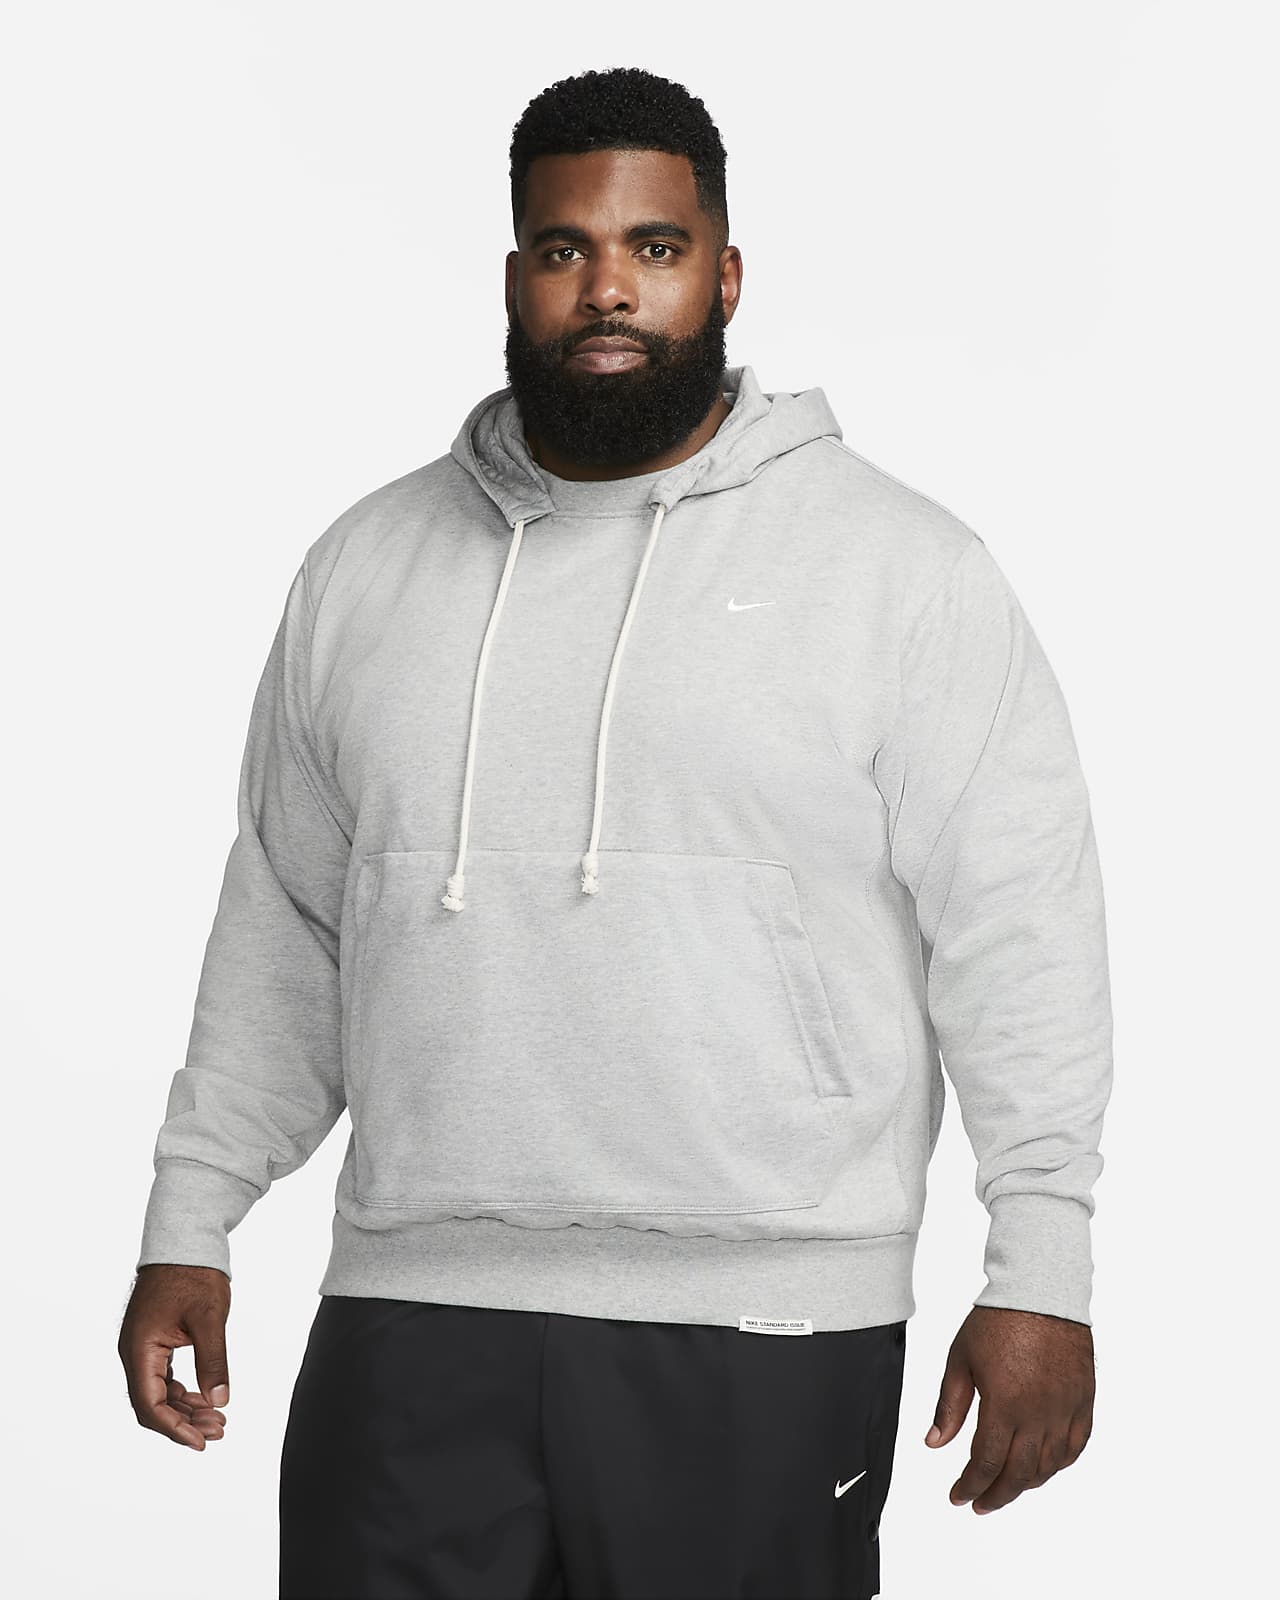 Nike / Men's Standard Issue Hoodie